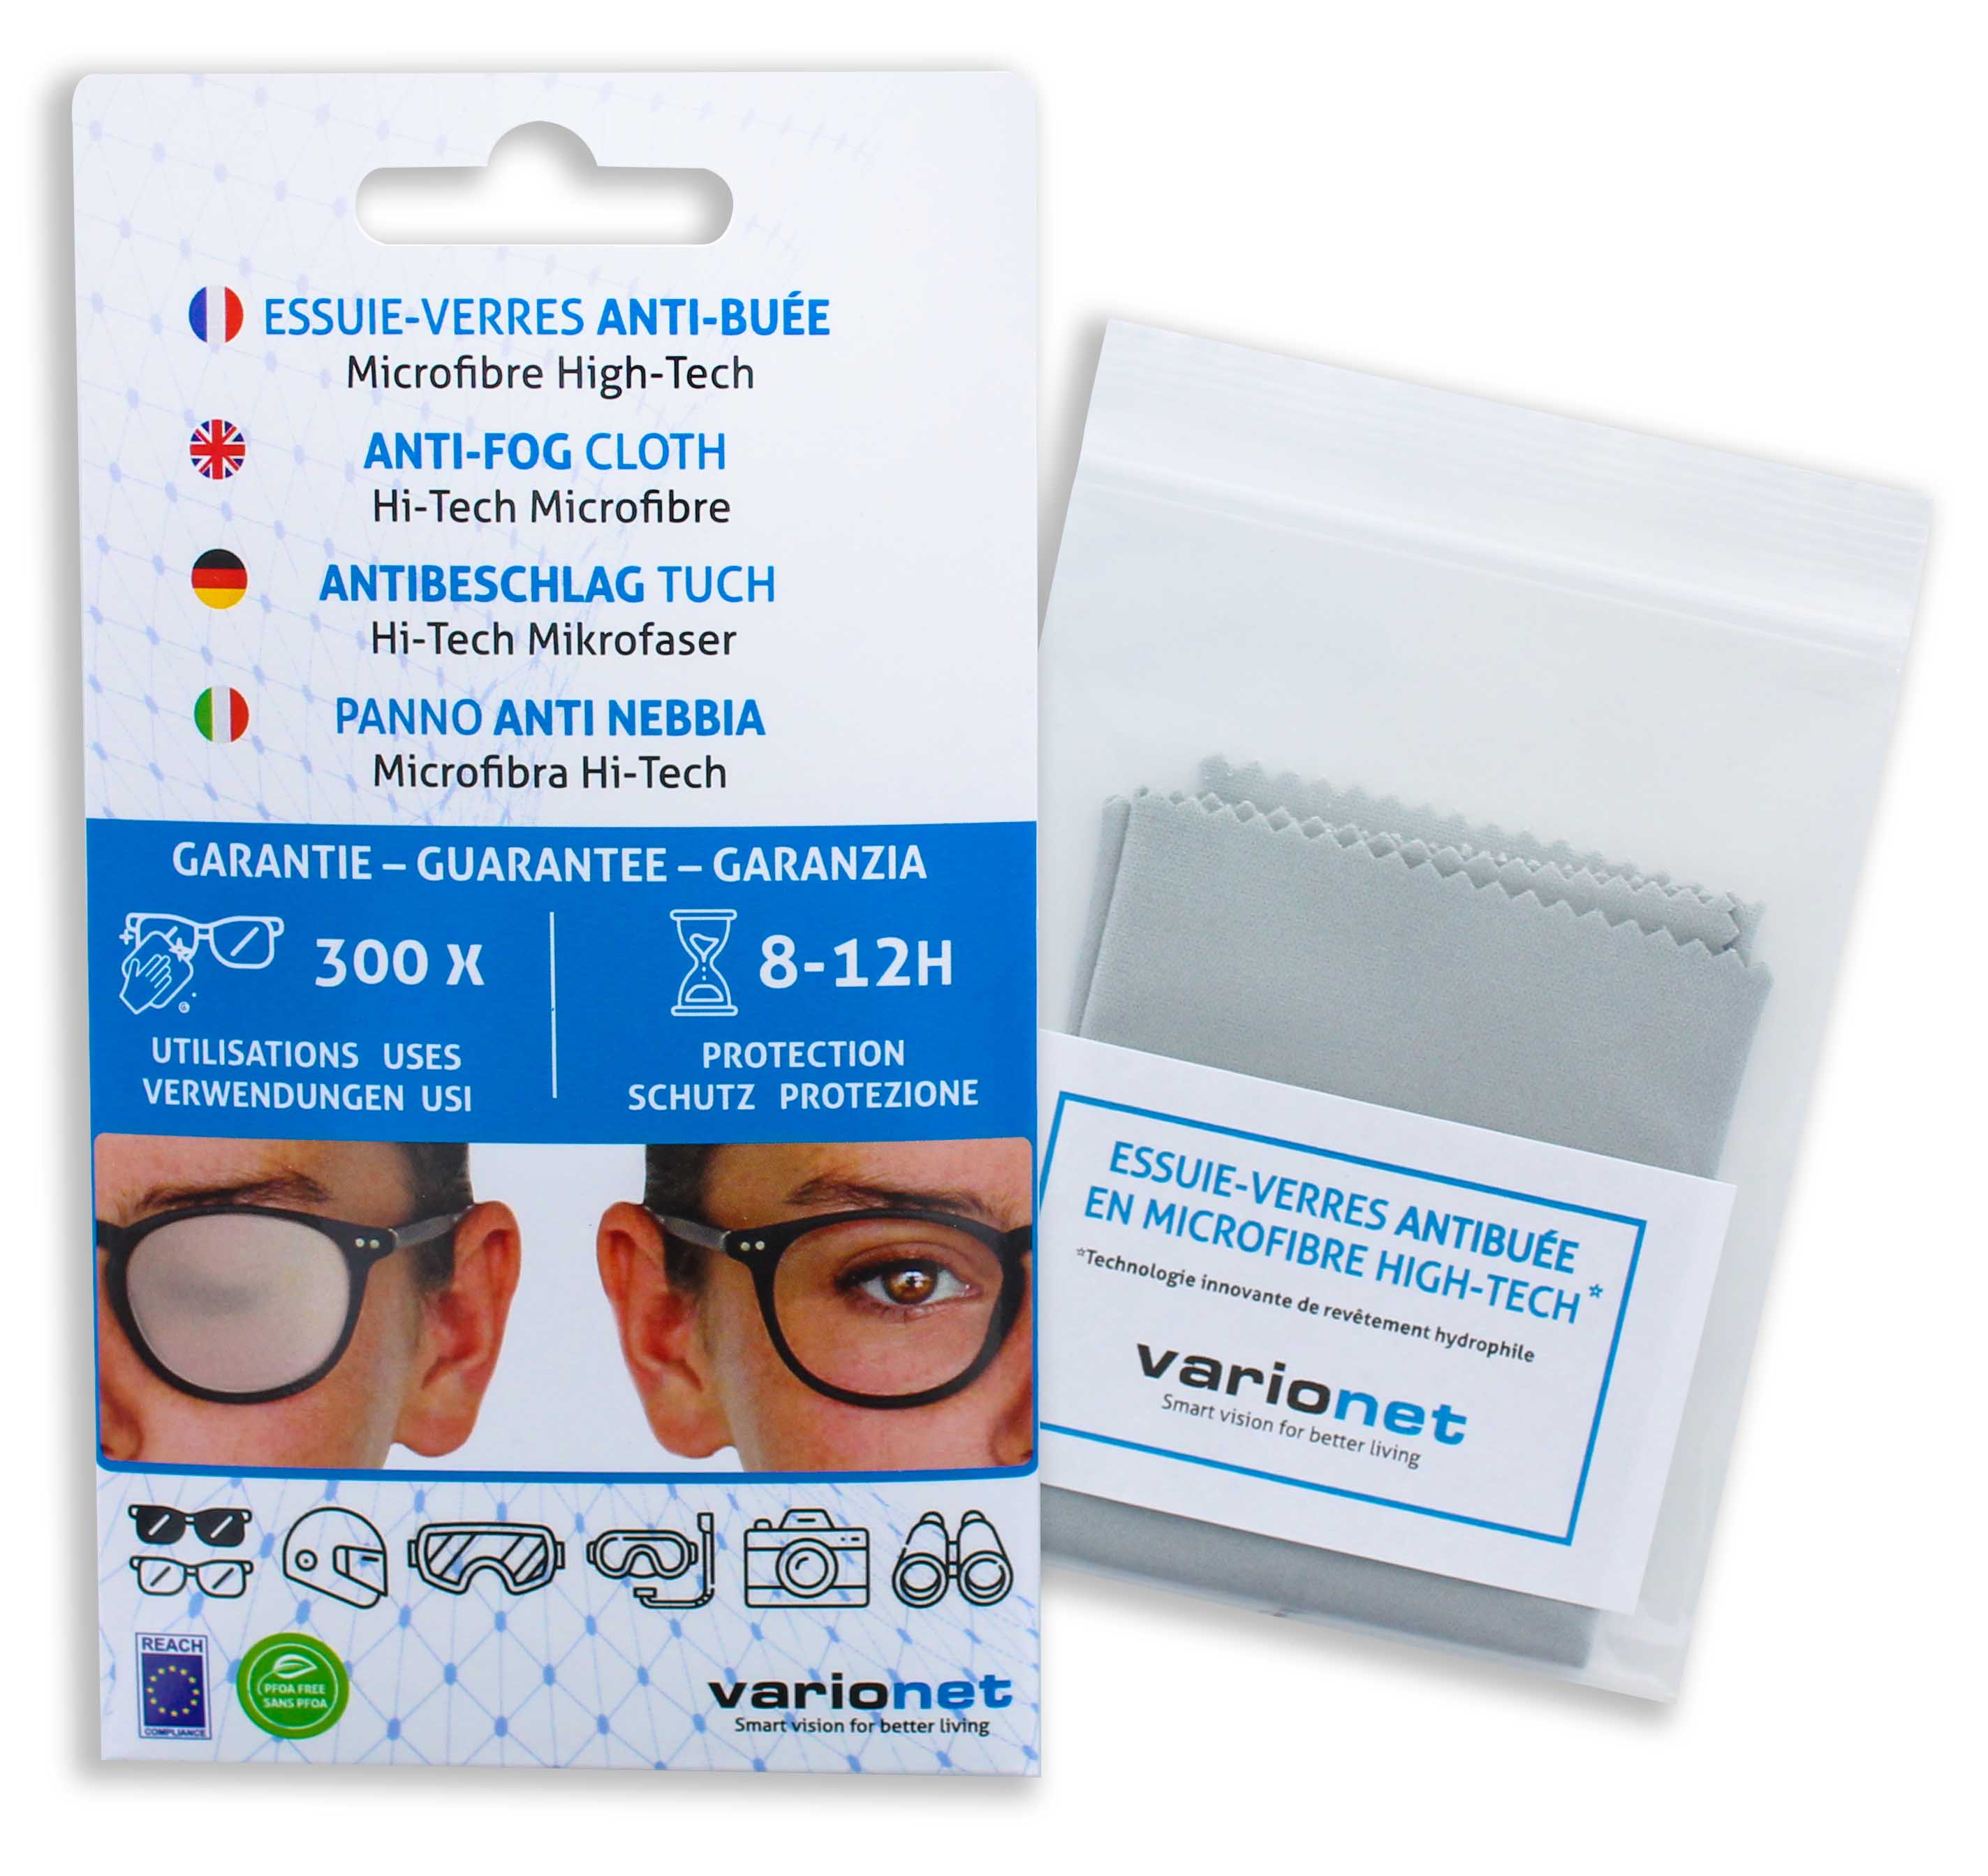 Lingettes nettoyantes lunettes anti buee efficaces - 50 lingettes